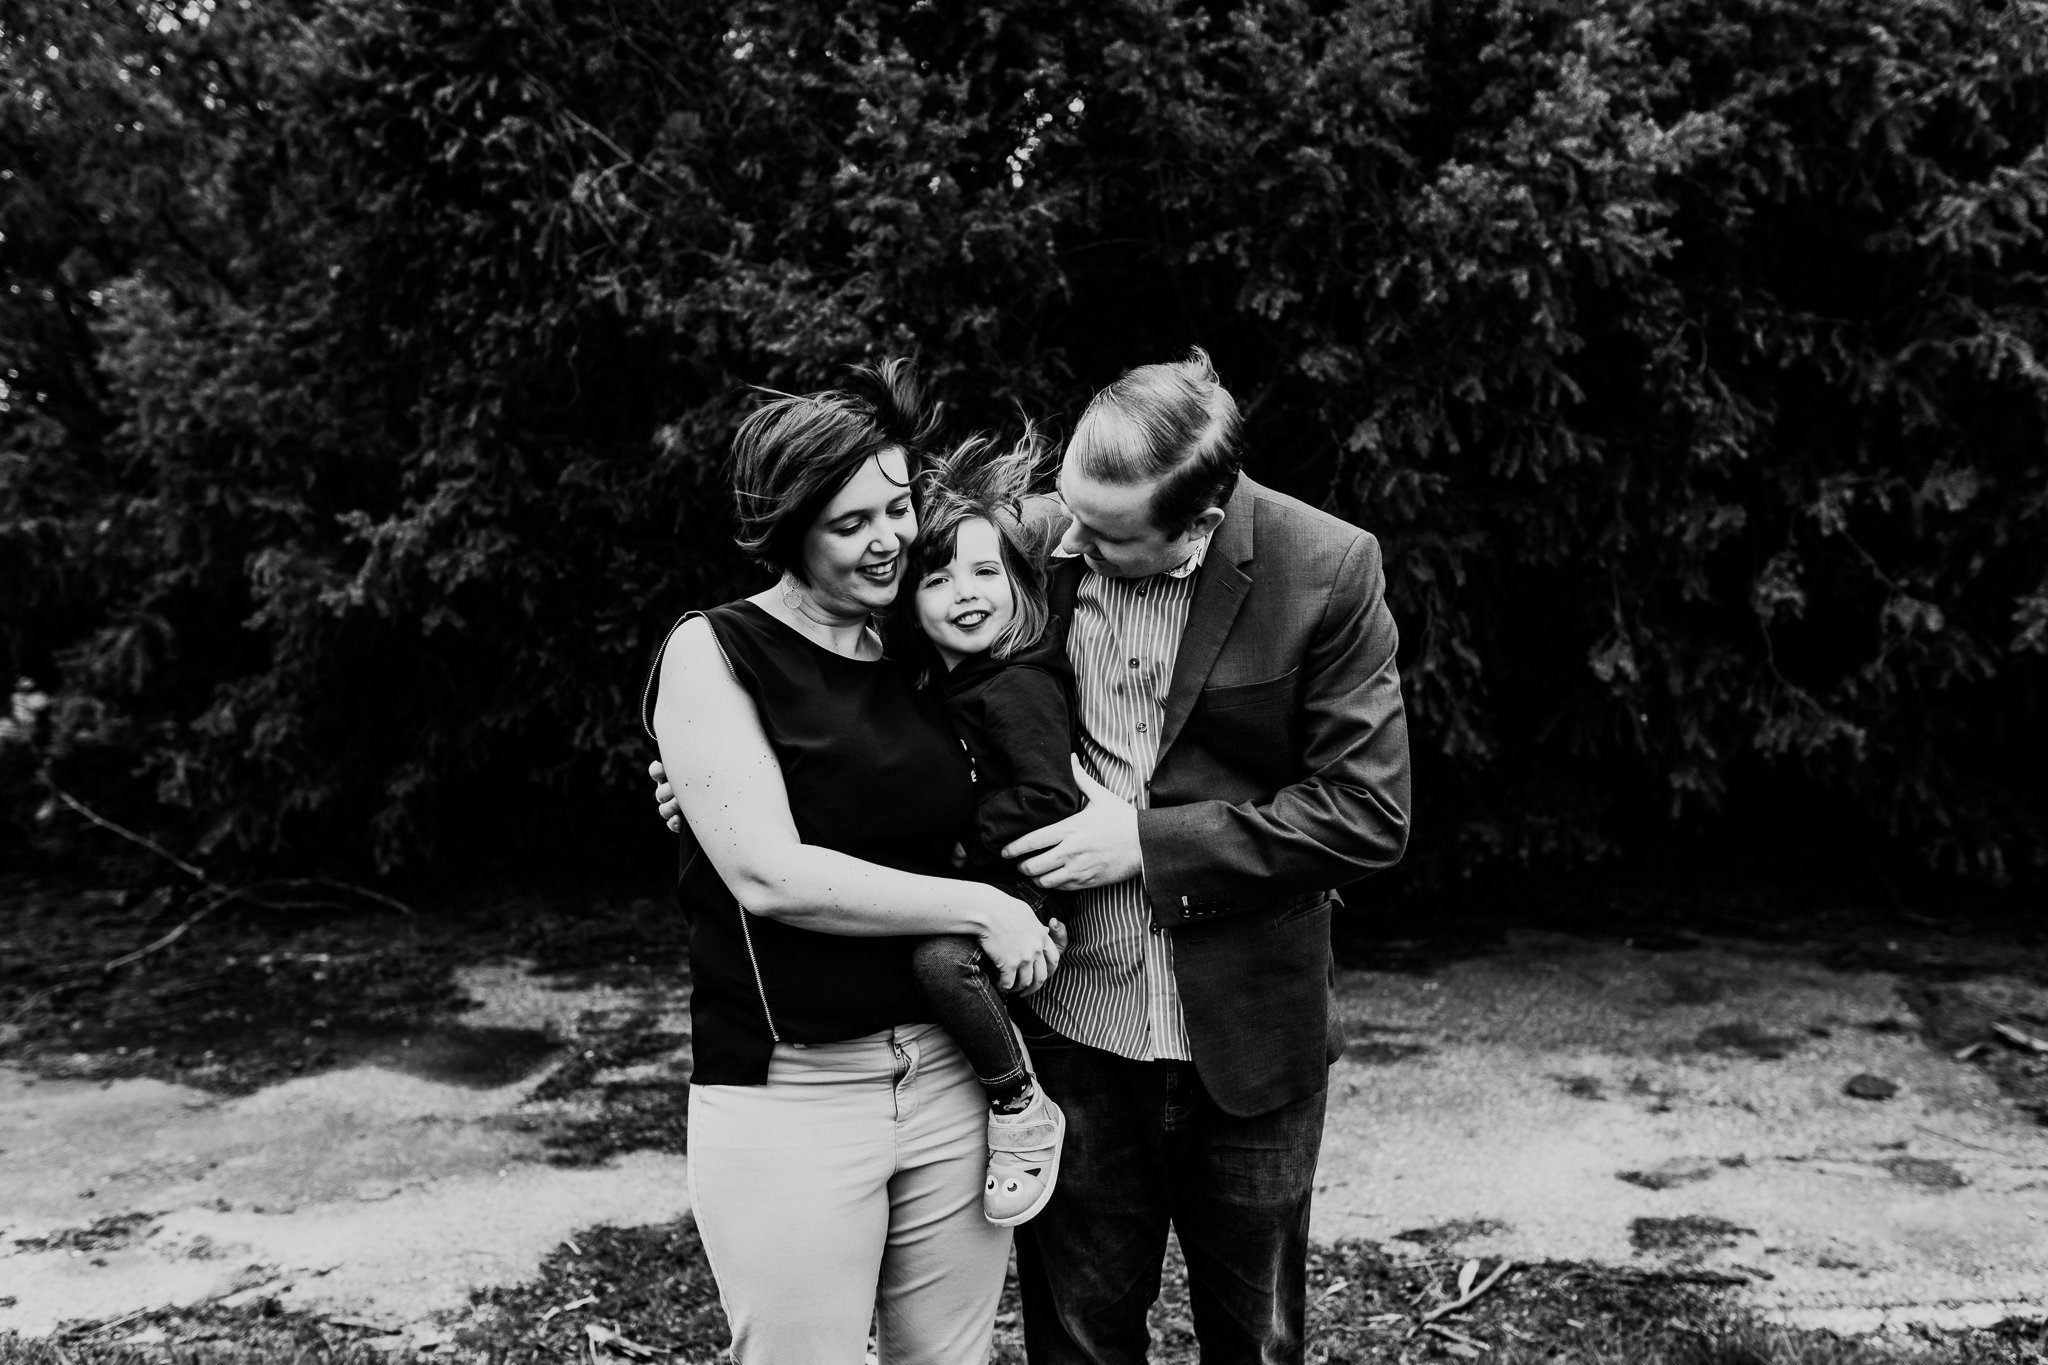 Sardis+Family+Photographer+-+Anna+Hurley+Photography+4.jpg